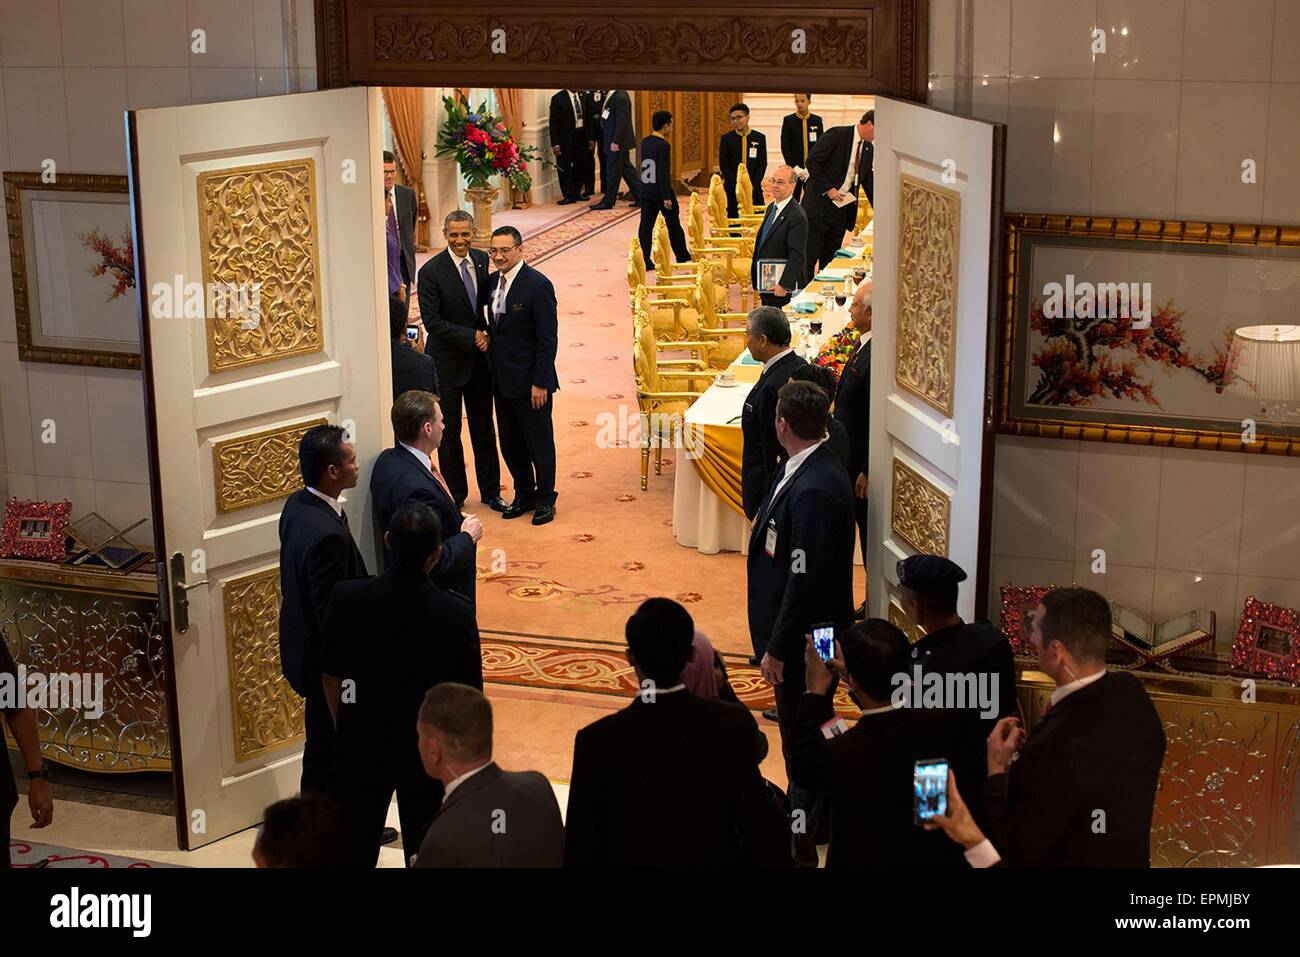 Stati Uniti Il presidente Barack Obama pone per le foto dopo un pranzo di lavoro con il Primo Ministro Najib Razak presso la residenza del Primo Ministro il 27 aprile 2104 a Kuala Lumpur, Malesia. Foto Stock